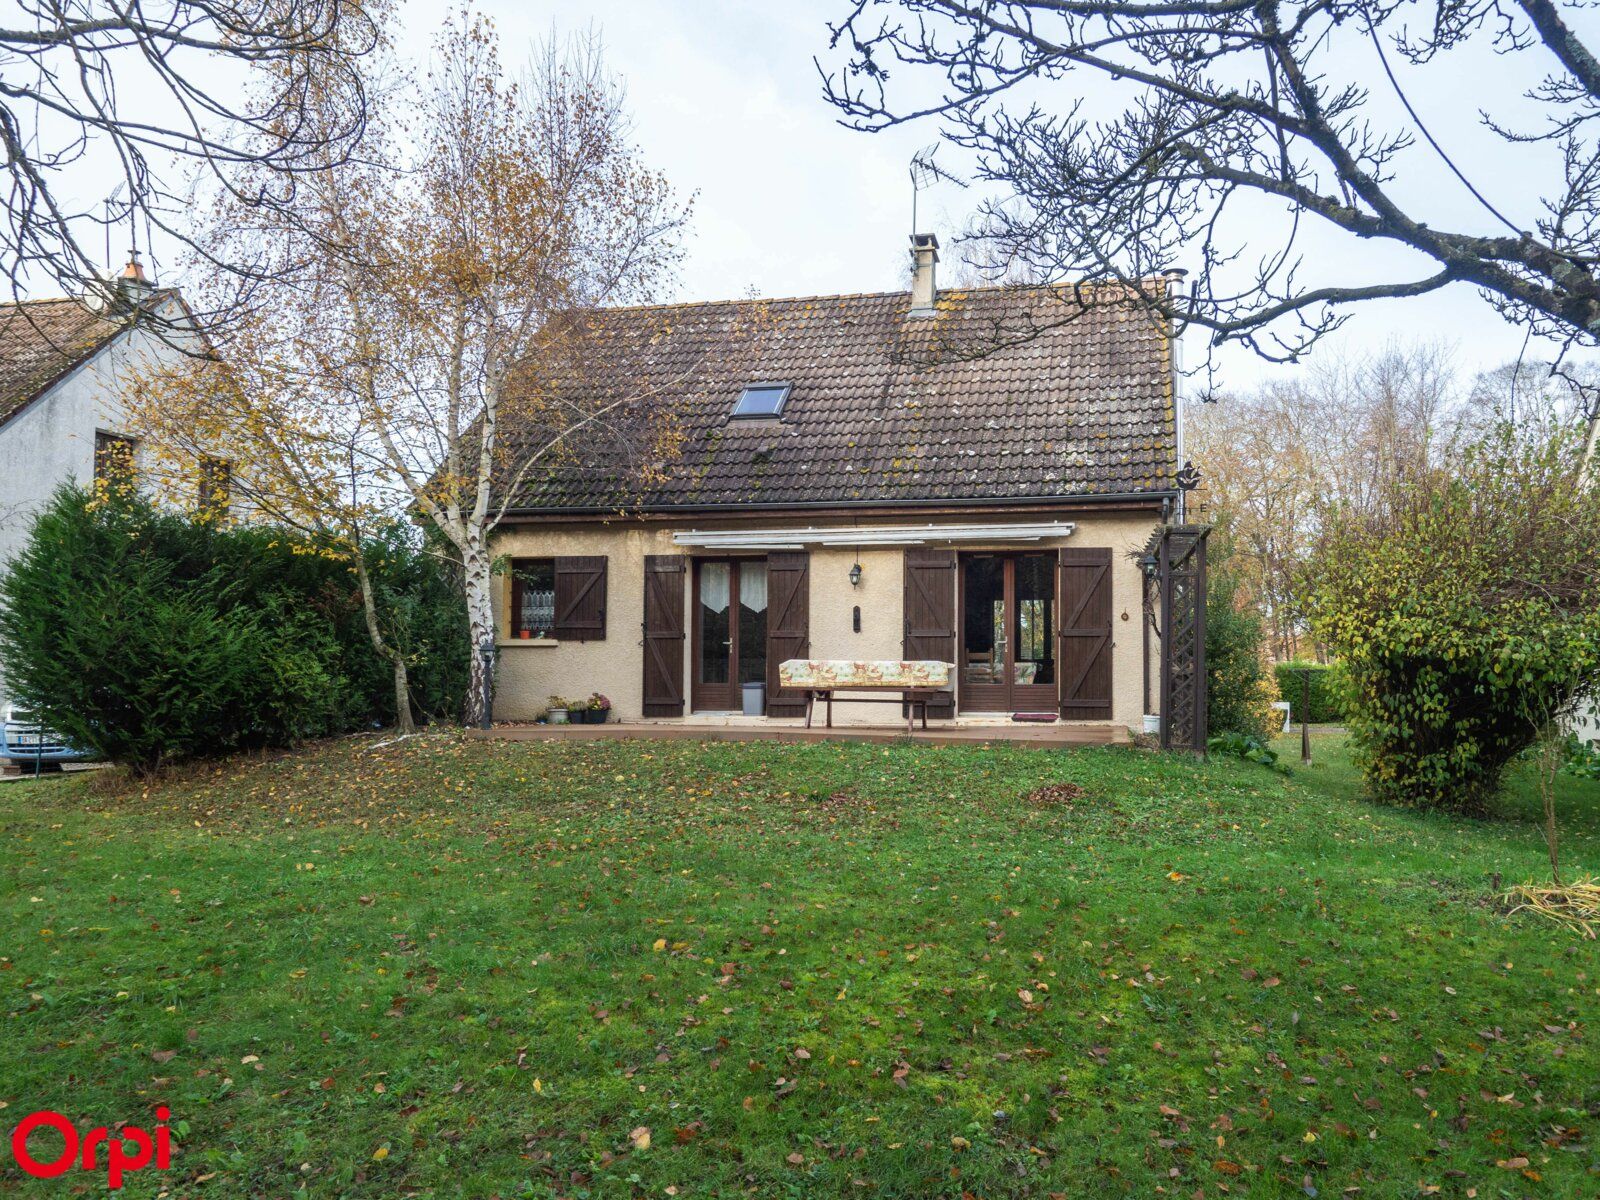 Maison à vendre 4 116m2 à La Ville-aux-Bois-lès-Pontavert vignette-1